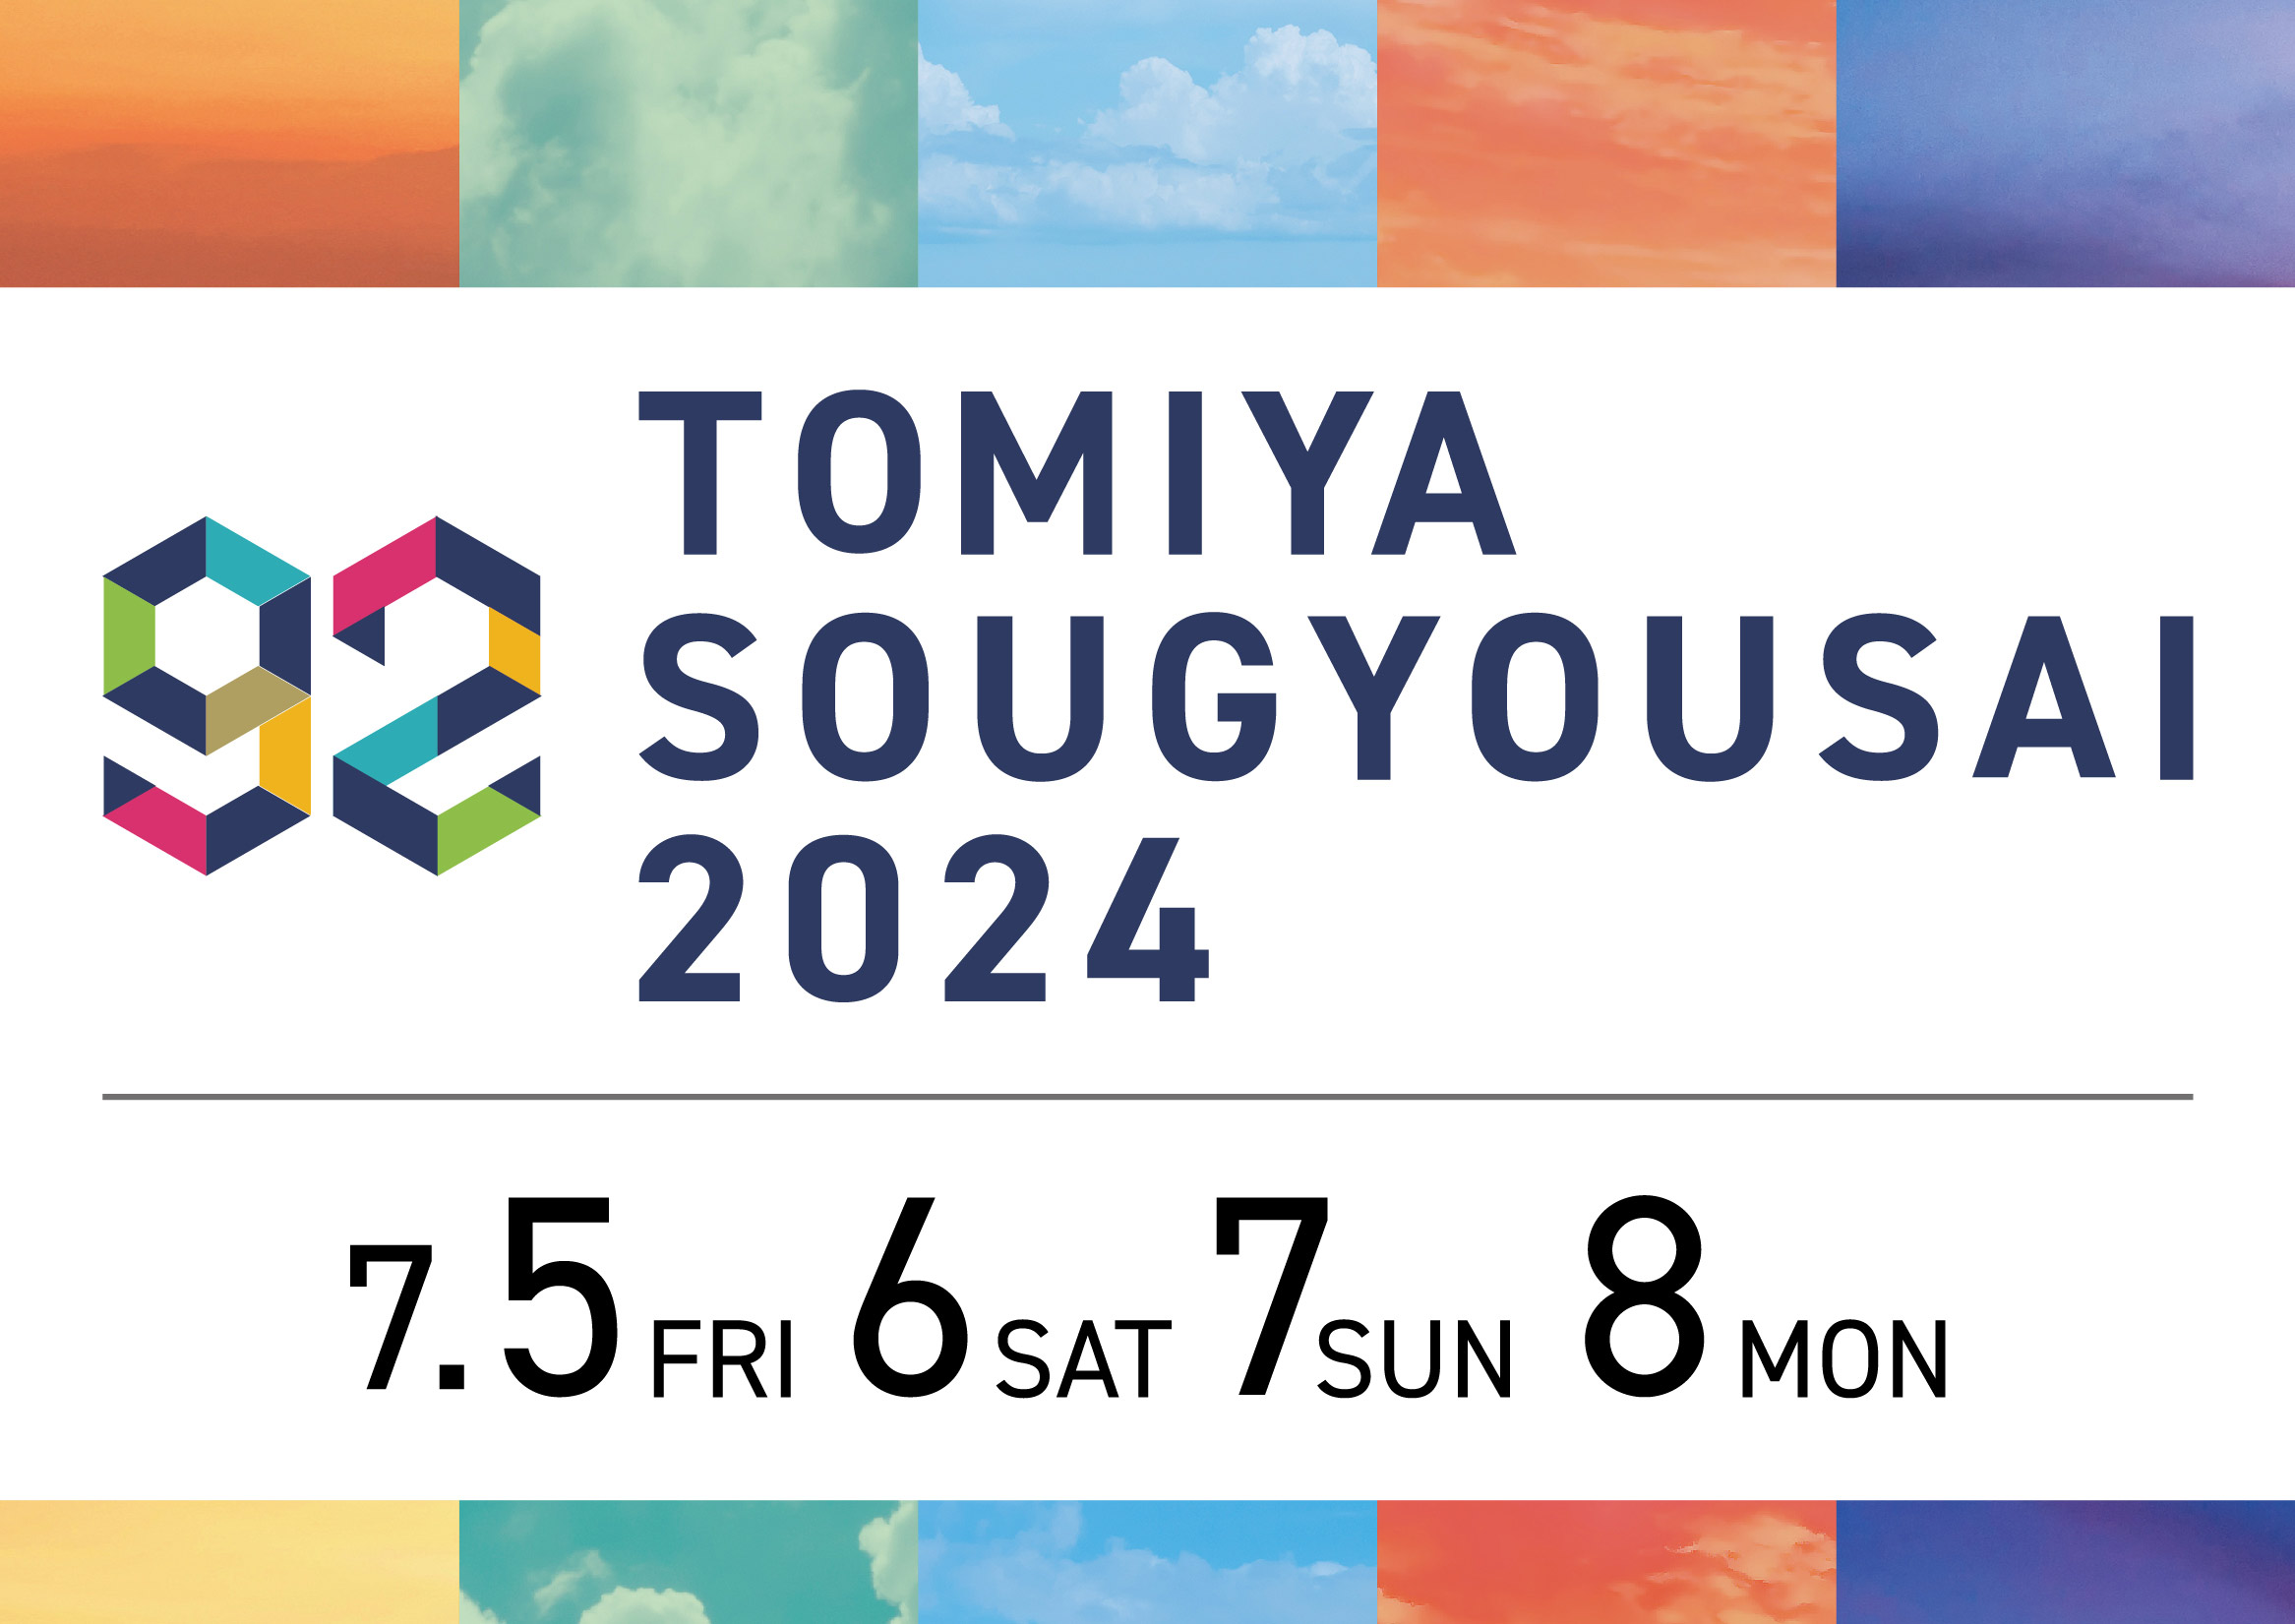 TOMIYA 創業祭 2024